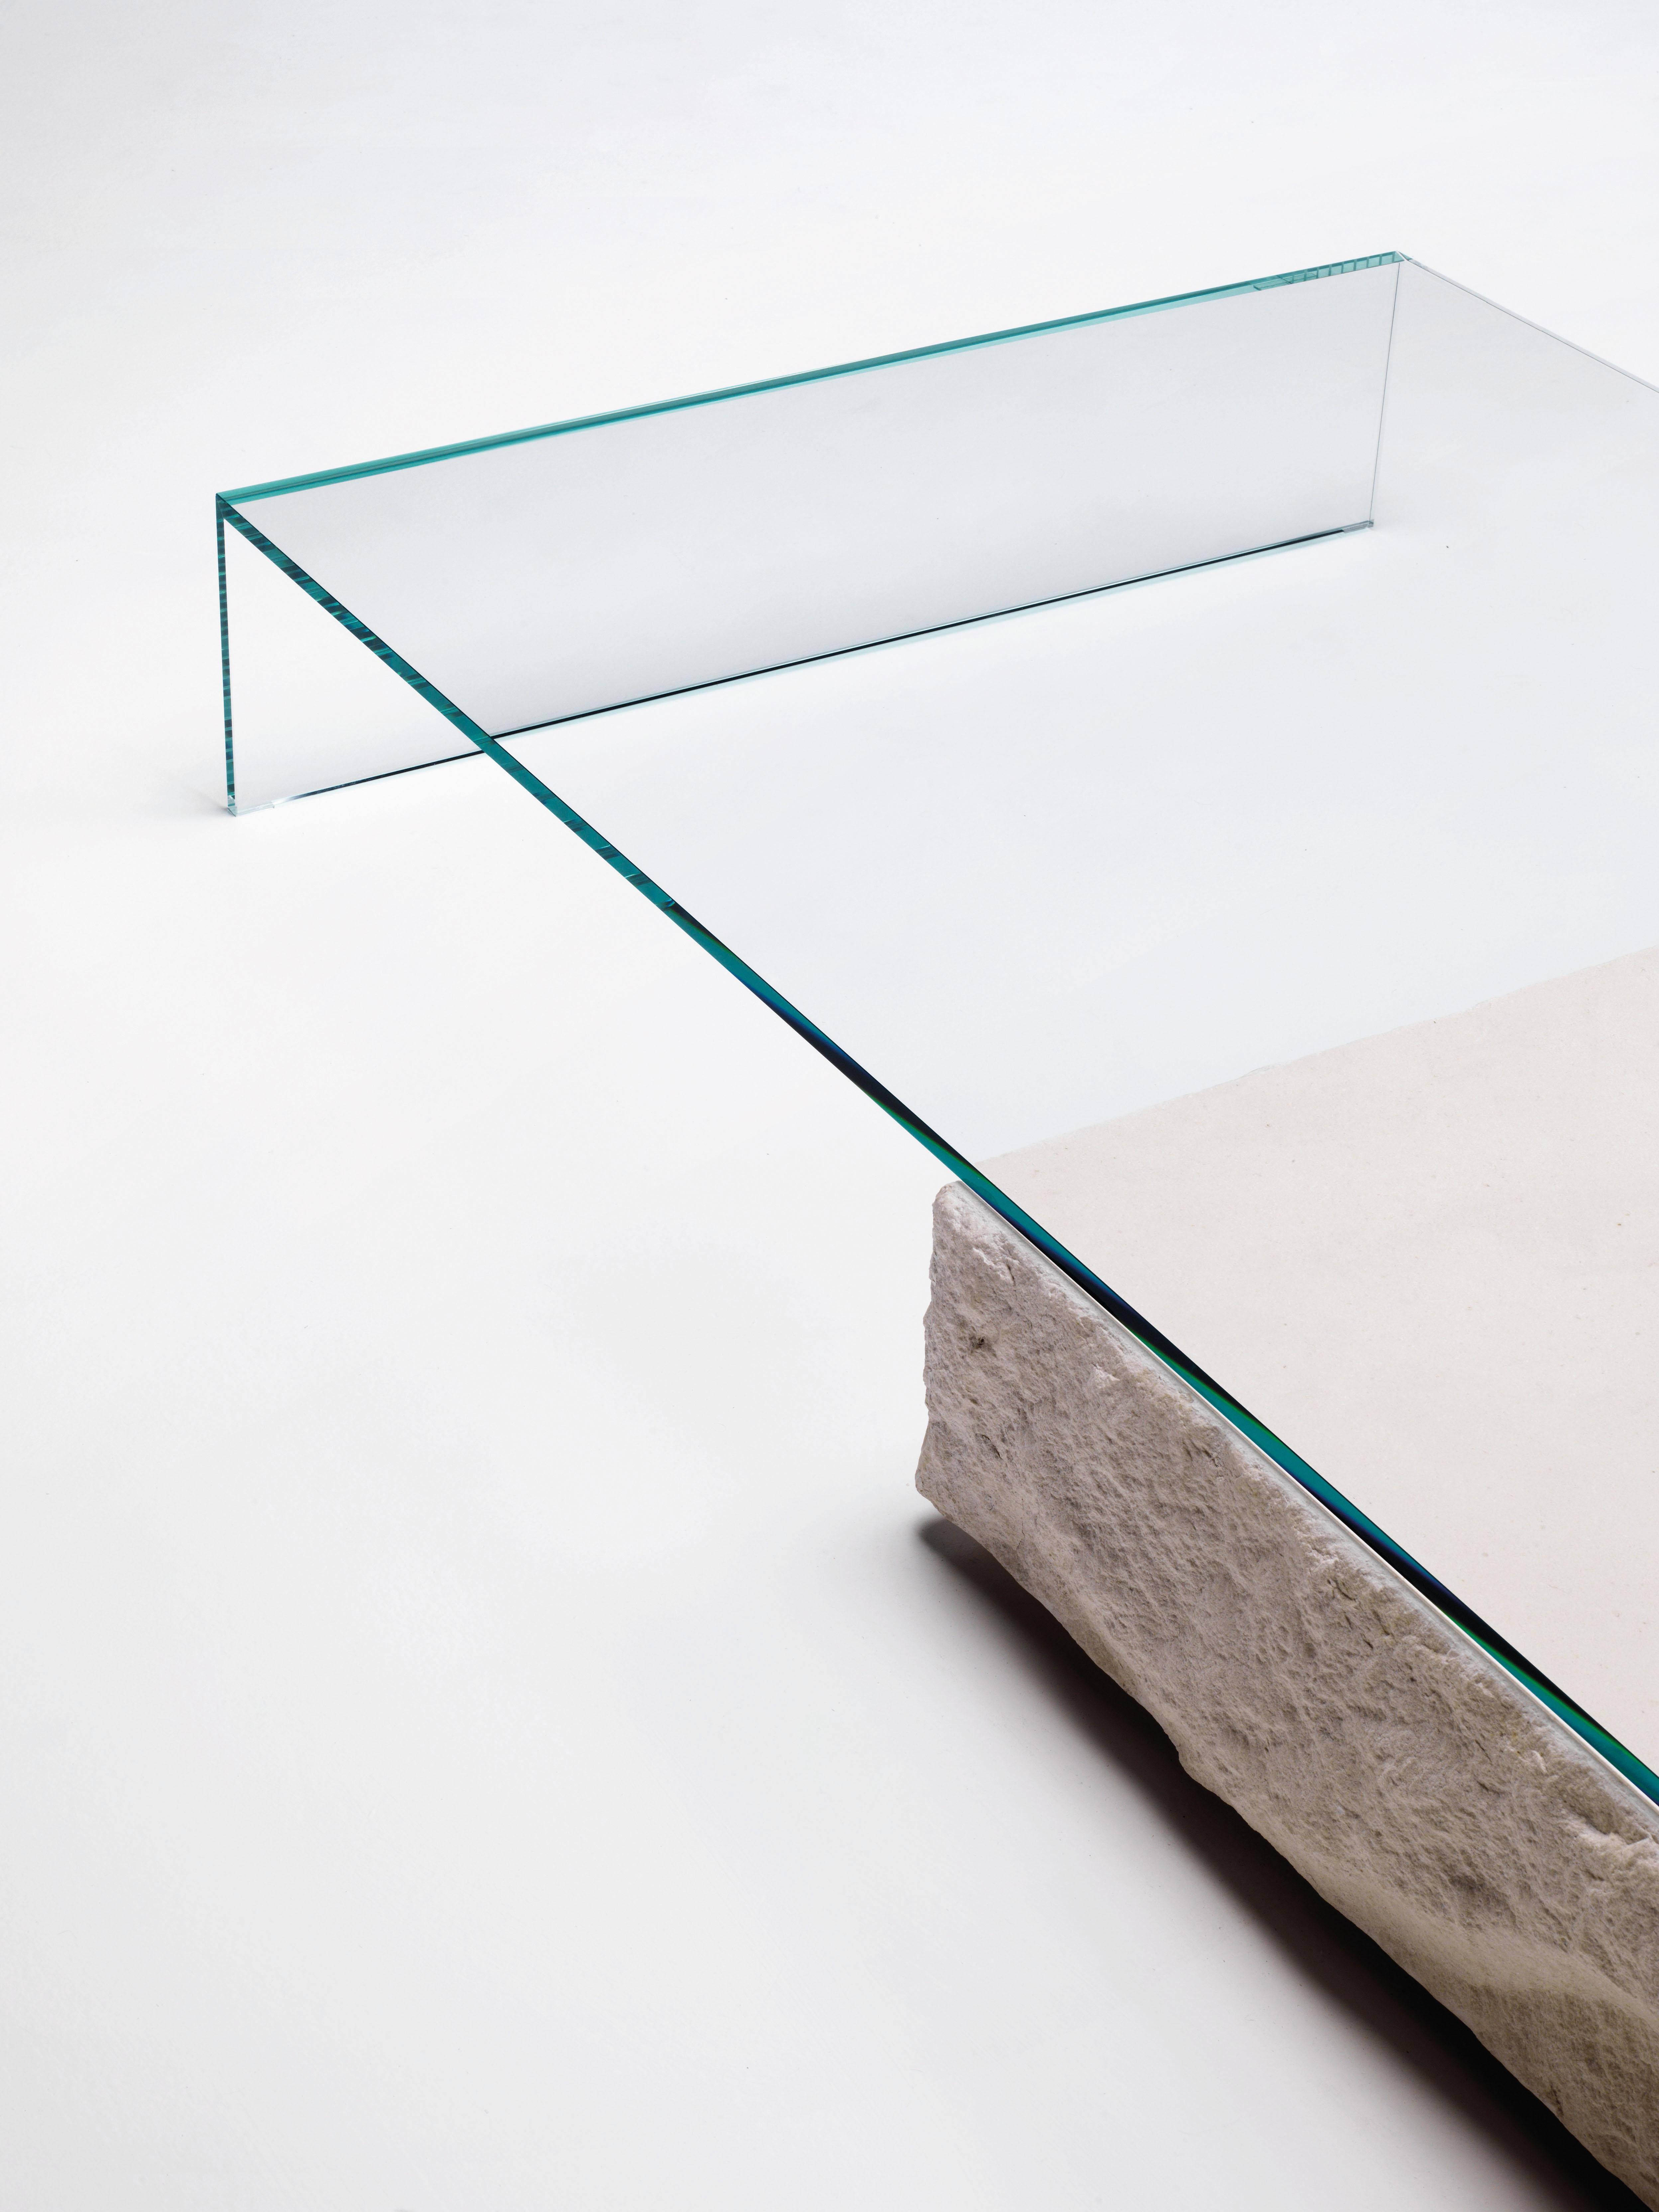 Der niedrige Tisch Terraliquida wird hier in transparentem Extralight-Glas gezeigt. Niedriger Tisch, bestehend aus einem parallelepipedischen Kalkstein mit monolithischem Aussehen und einem Element aus gehärtetem, 15 mm dickem, geklebtem 45°